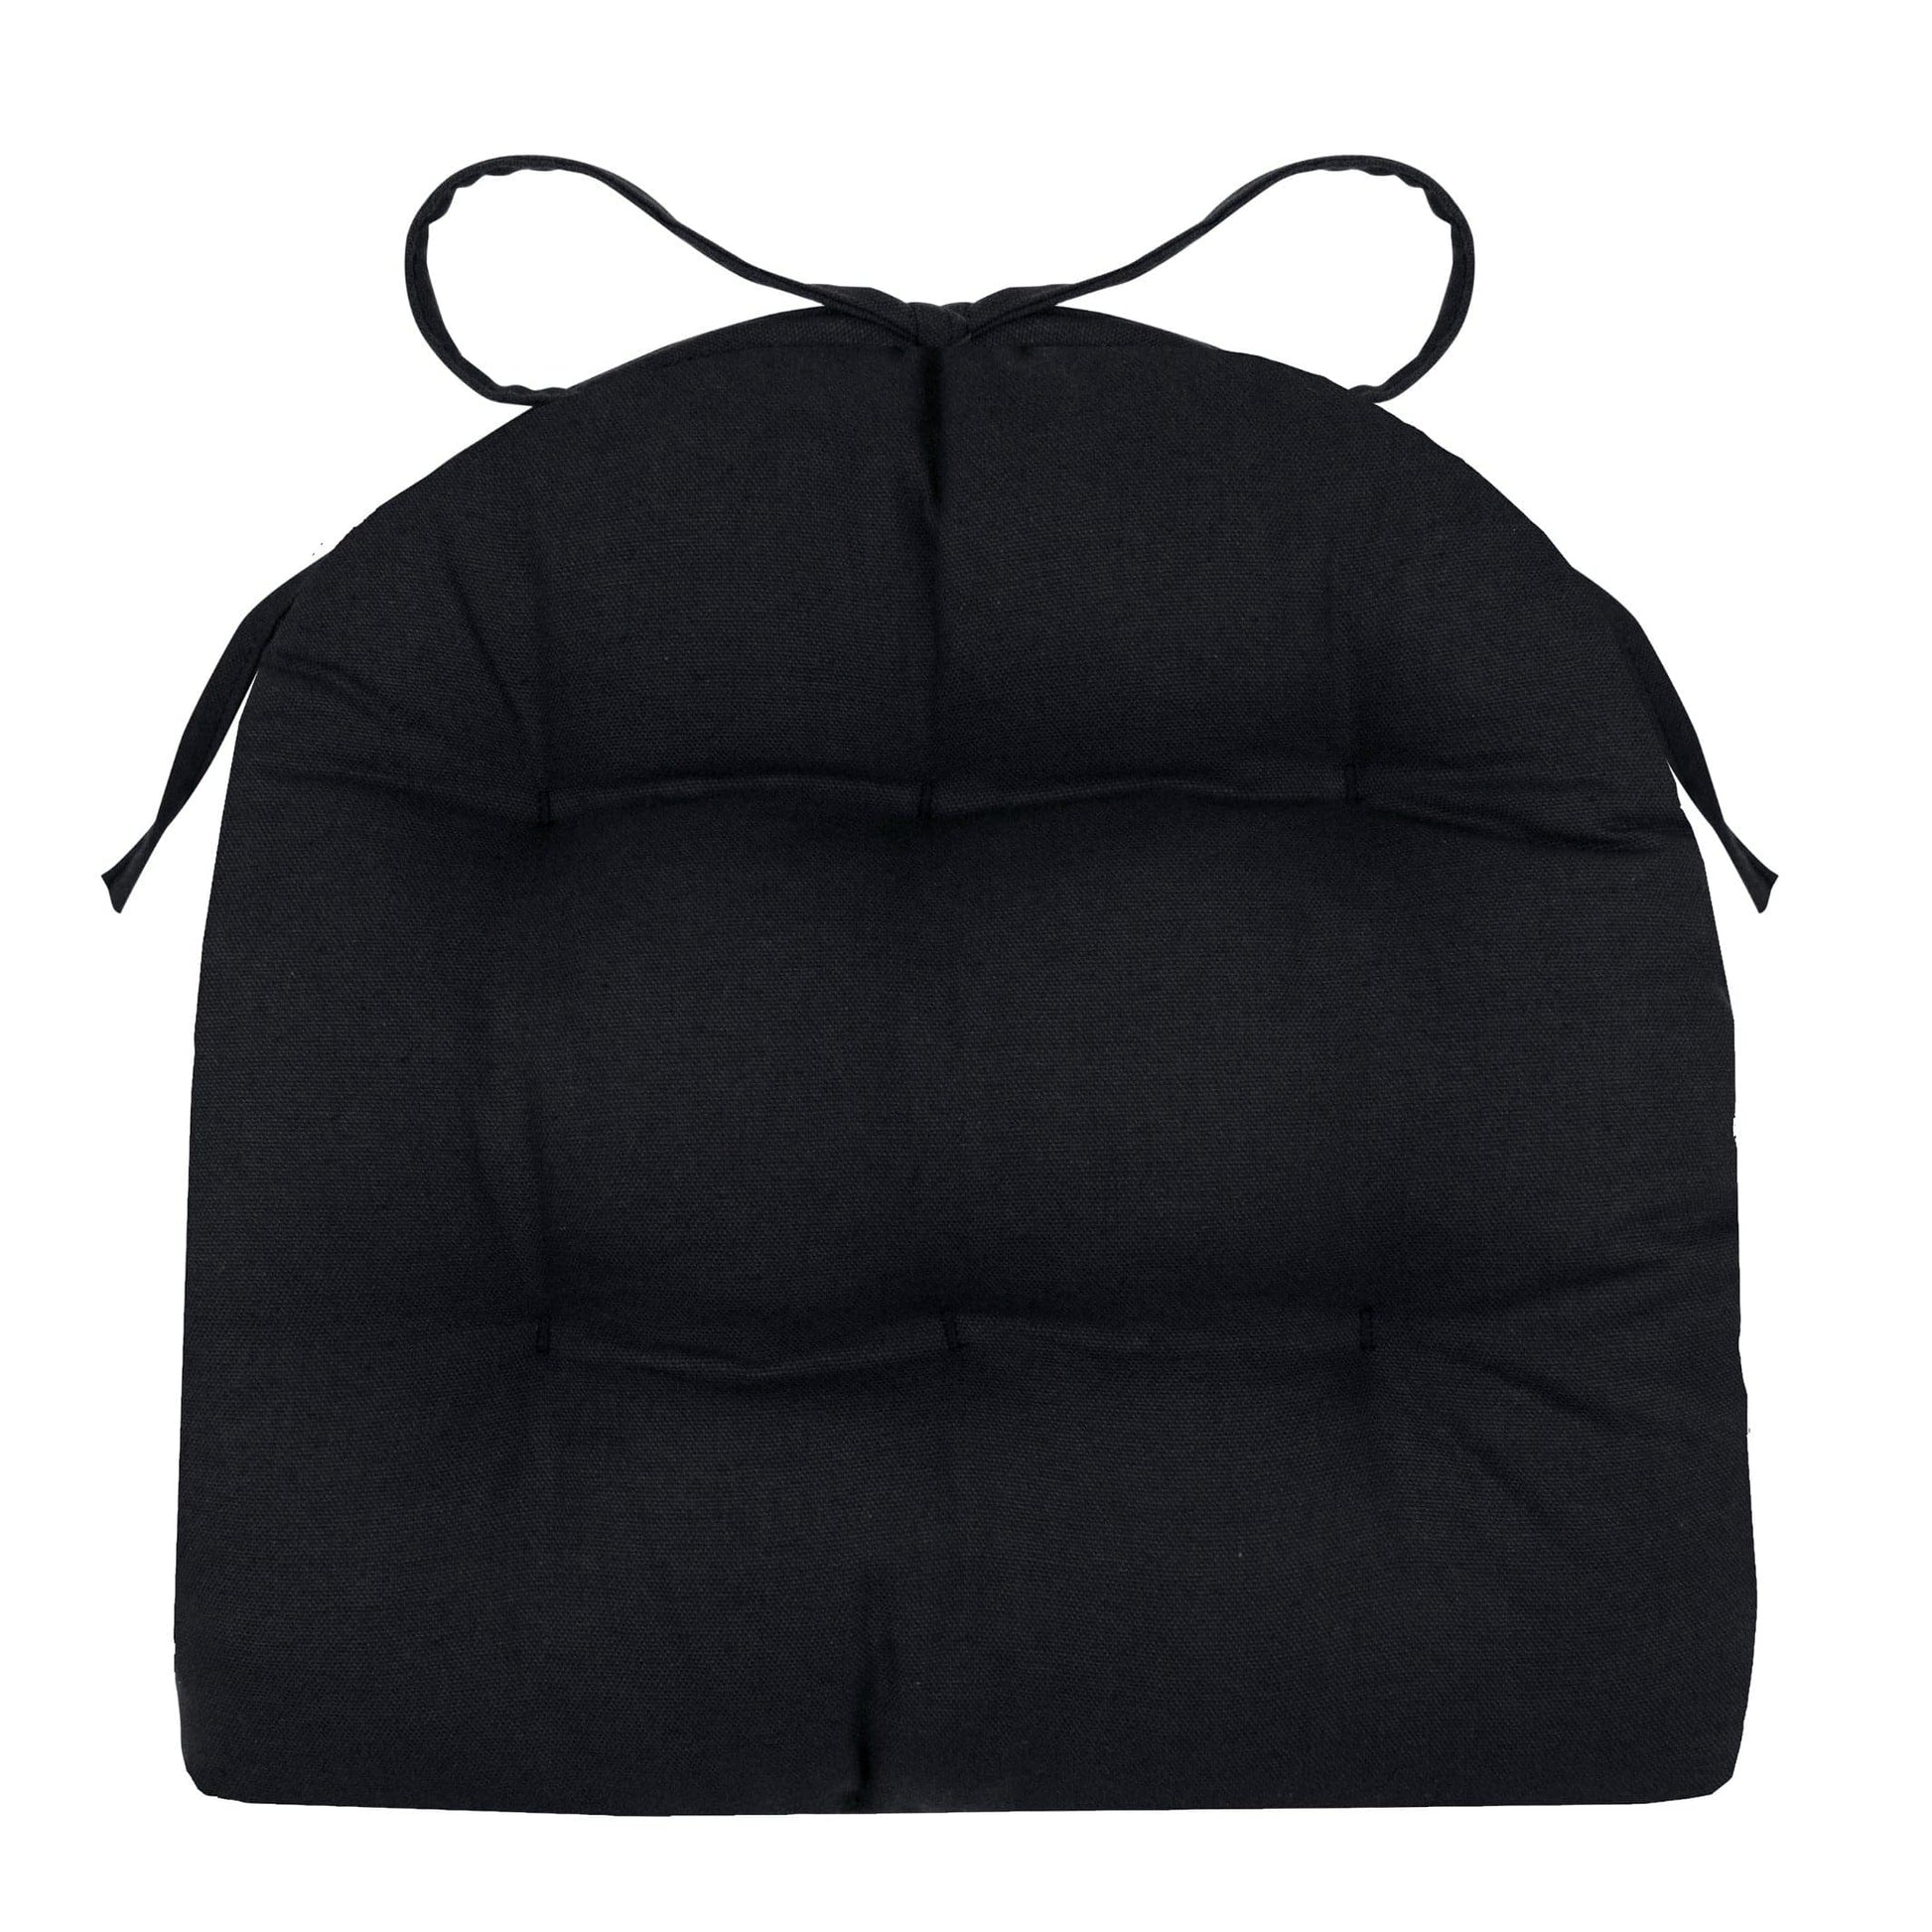 Cotton Duck Black Industrial Chair Cushion - Latex Foam Fill - Barnett Home Decor 